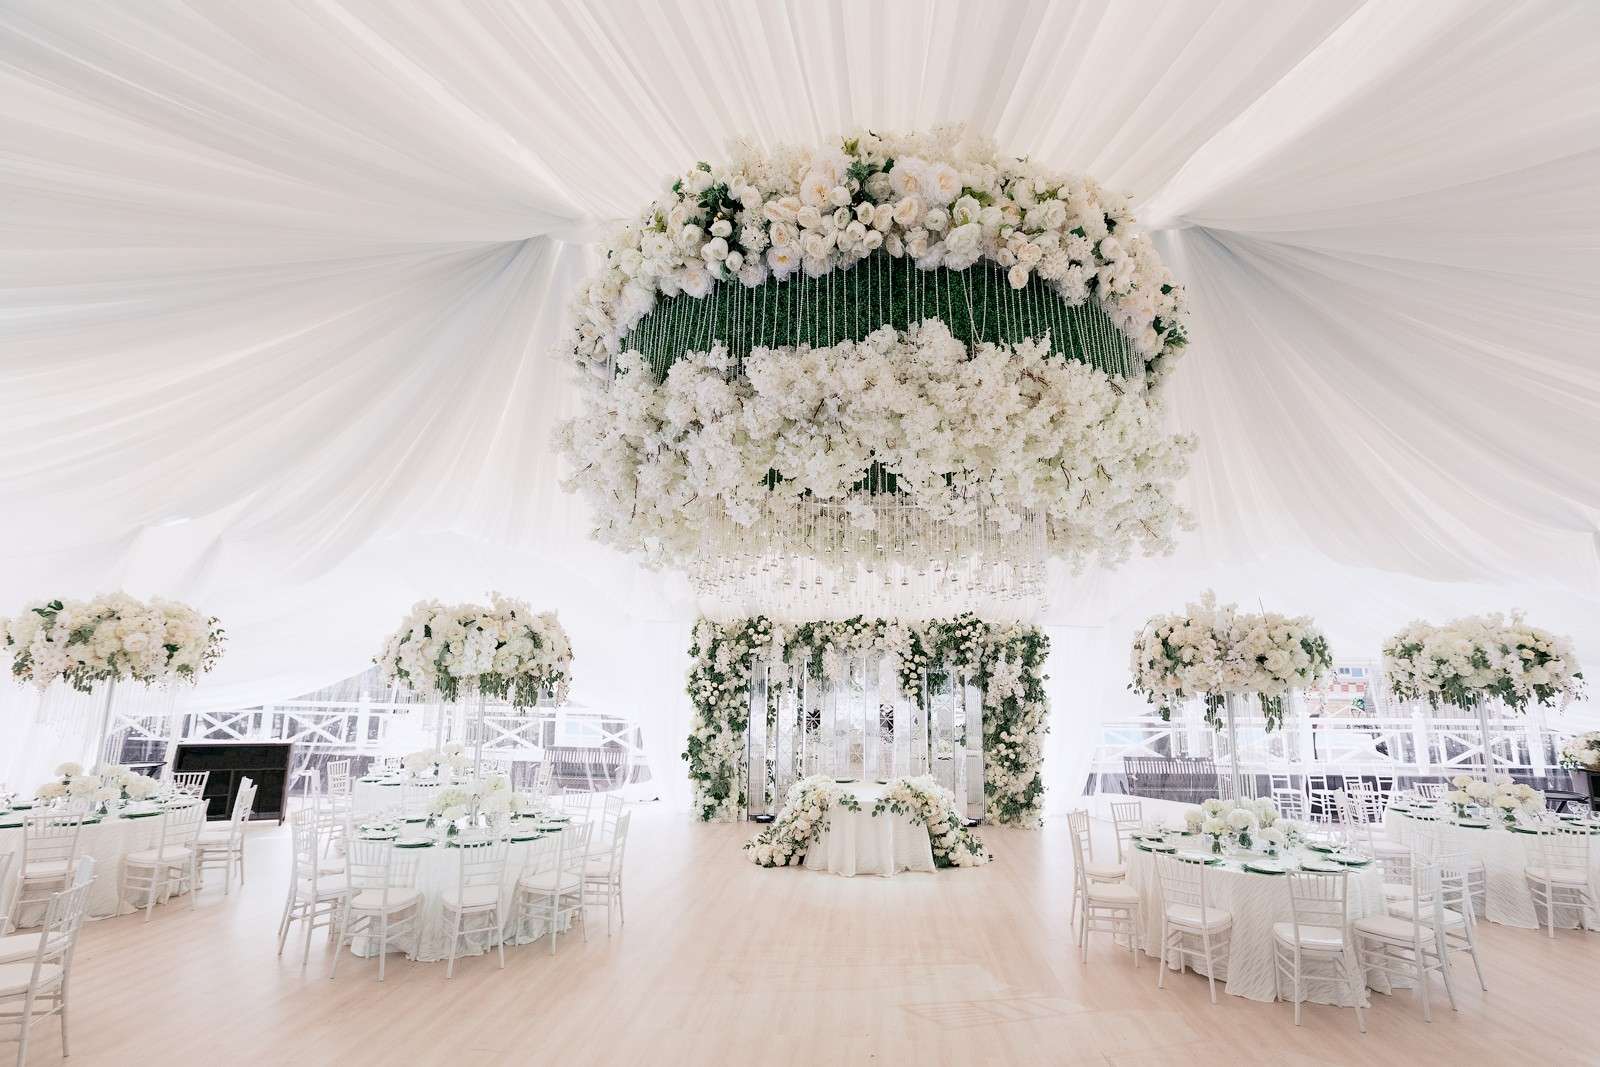 Оформлення залу на весілля: тренди року та поради з вибору стилістики, колірної гами та декору